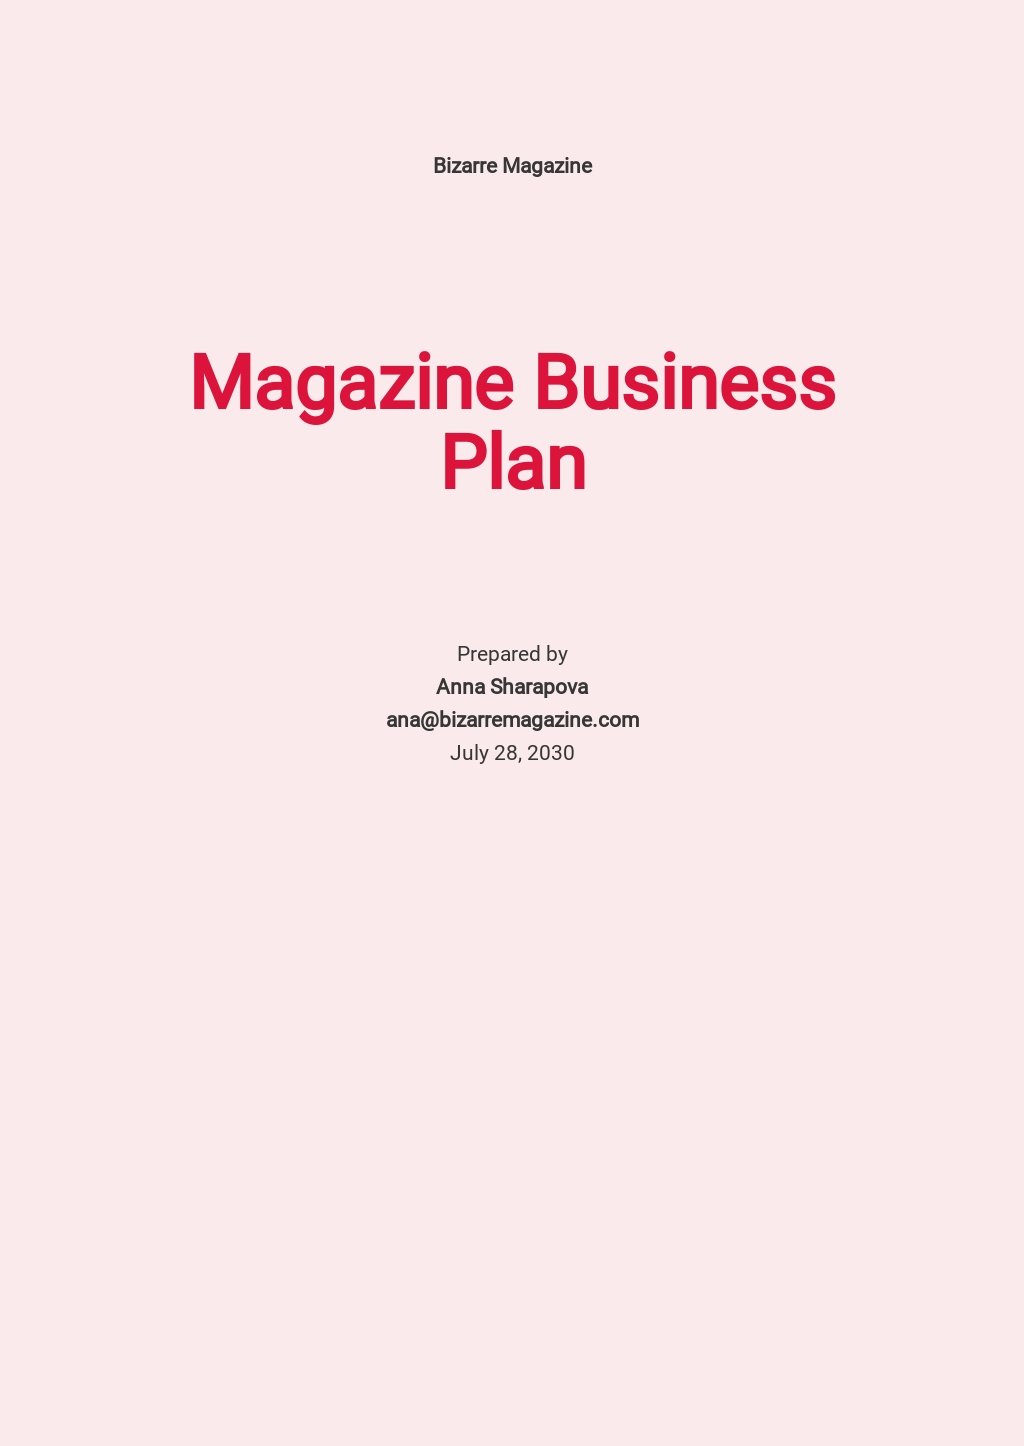 exemple de business plan magazine